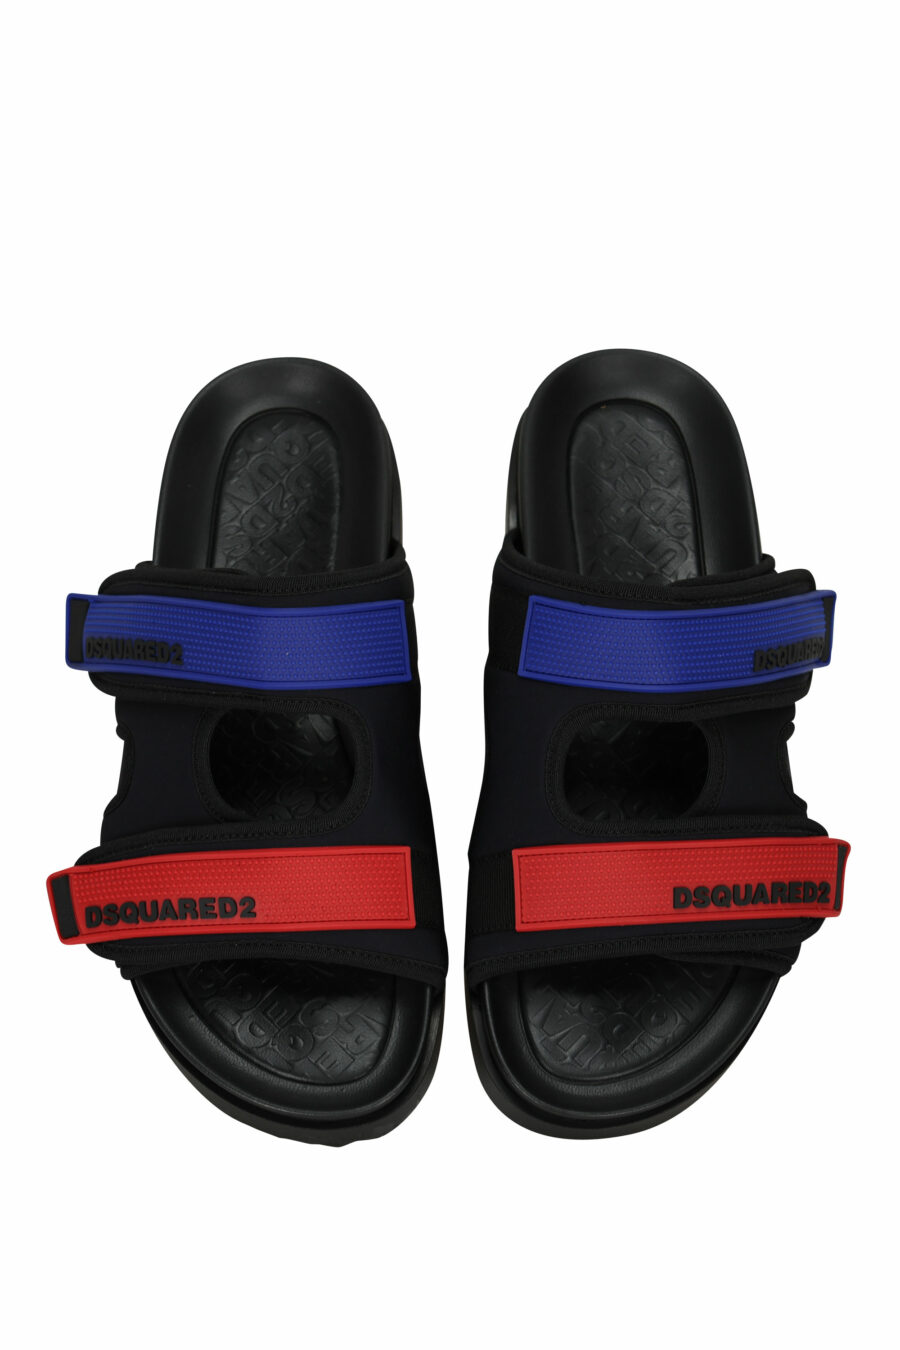 Sandalias negras con rojo y azul de velcro - 805777314715 4